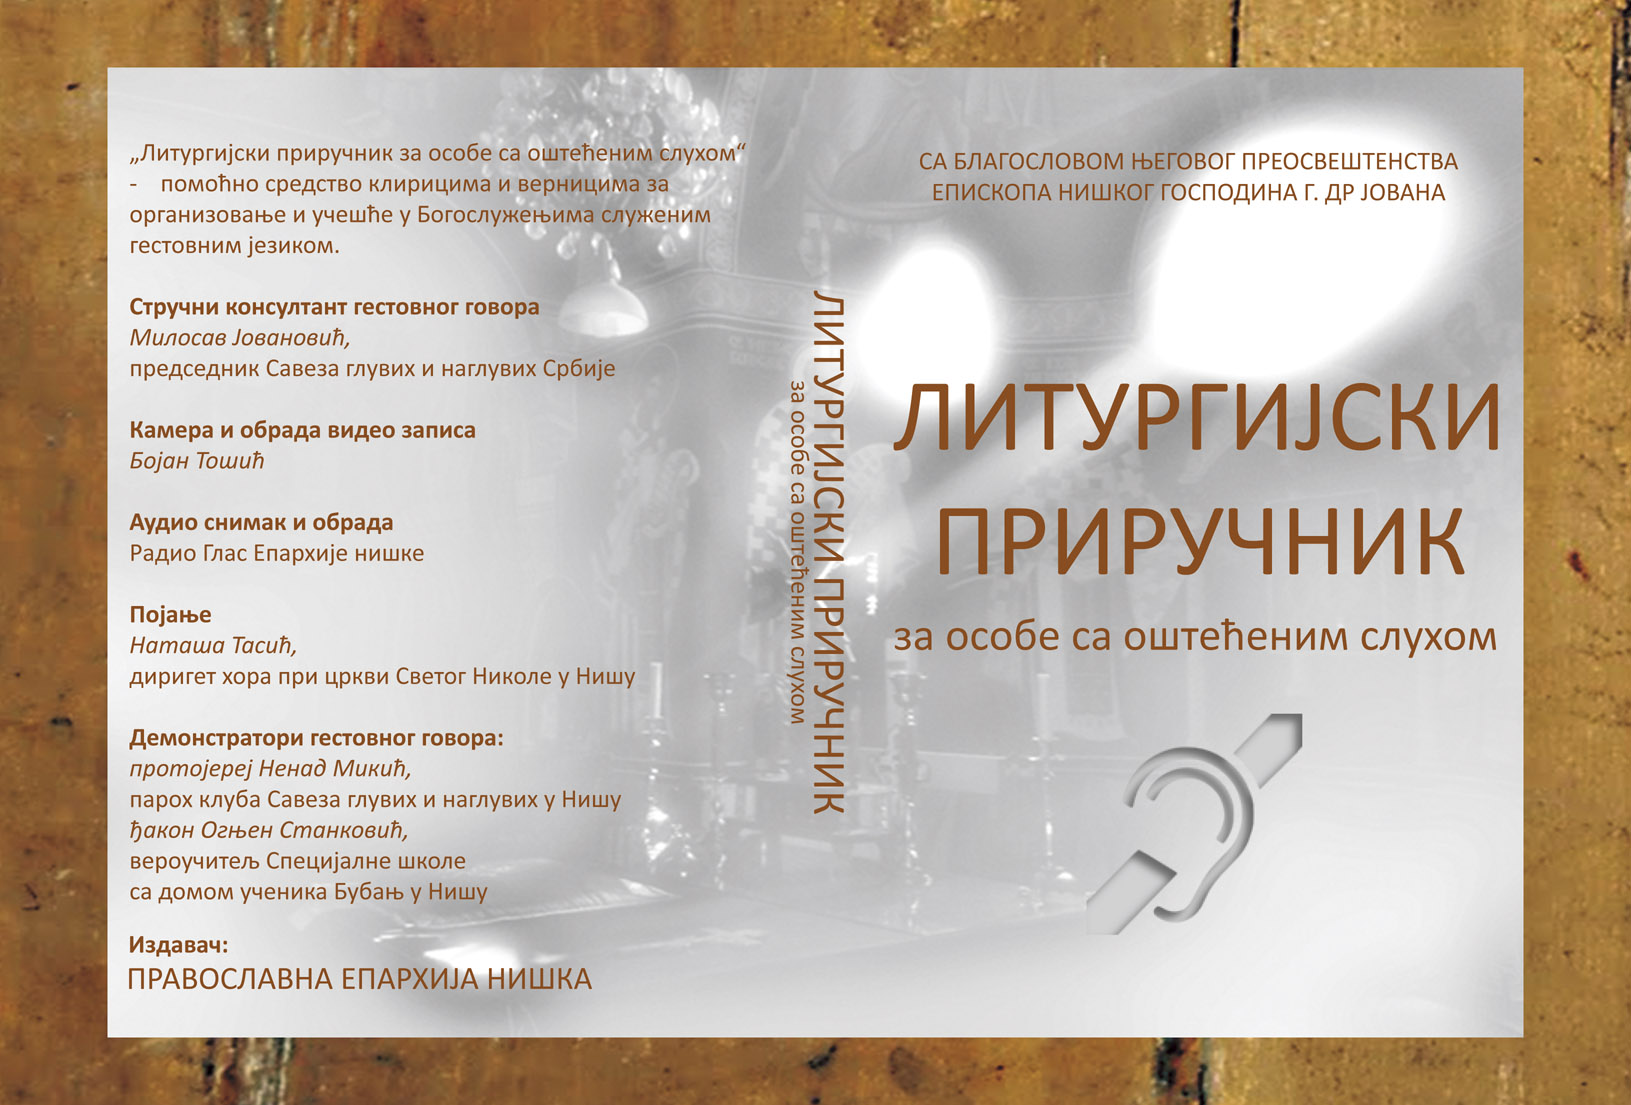 liturgijski prirucnik_dvd_cover